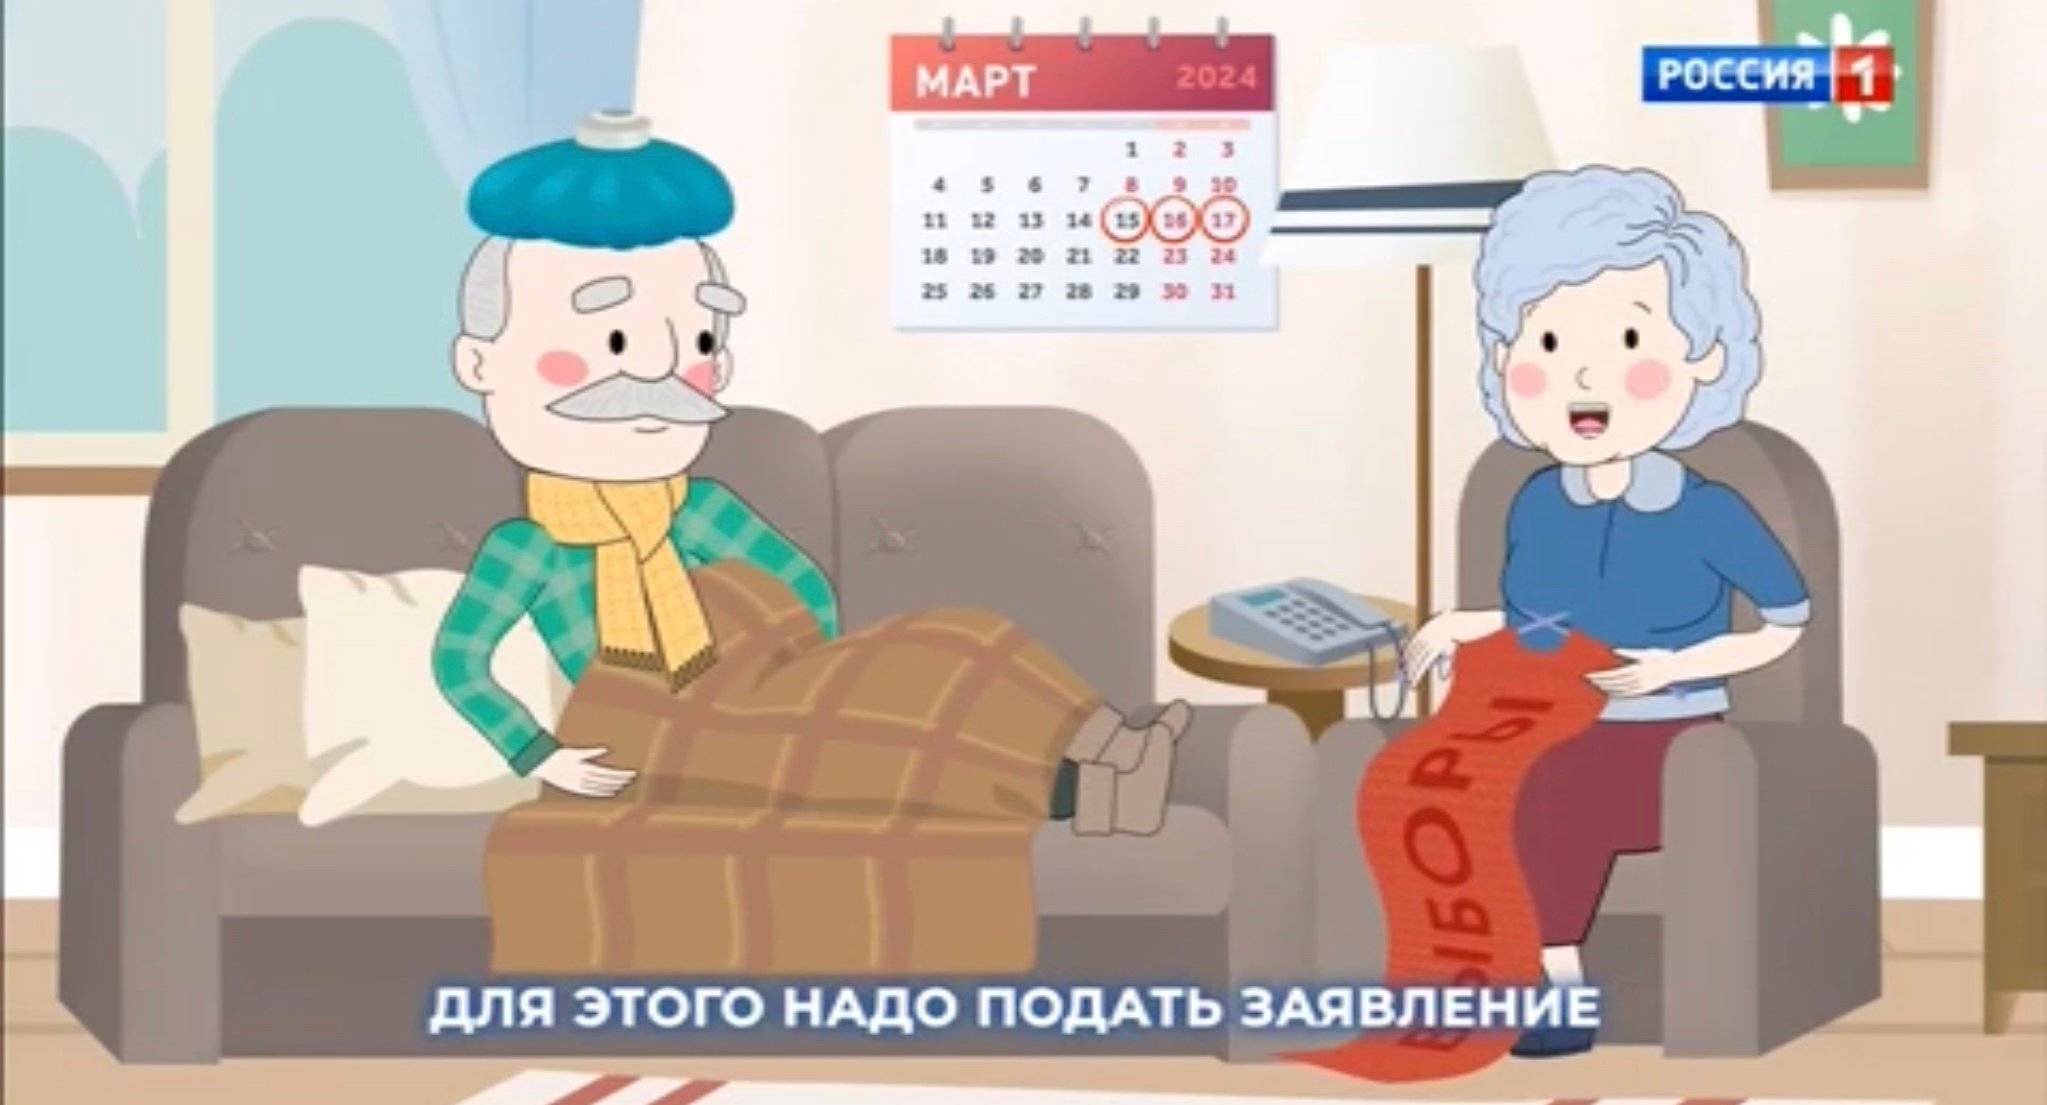 Kreskówka: dziadek lezy w łózku, a babcia robi na drutach szal z rosyjskim napisem Wybory